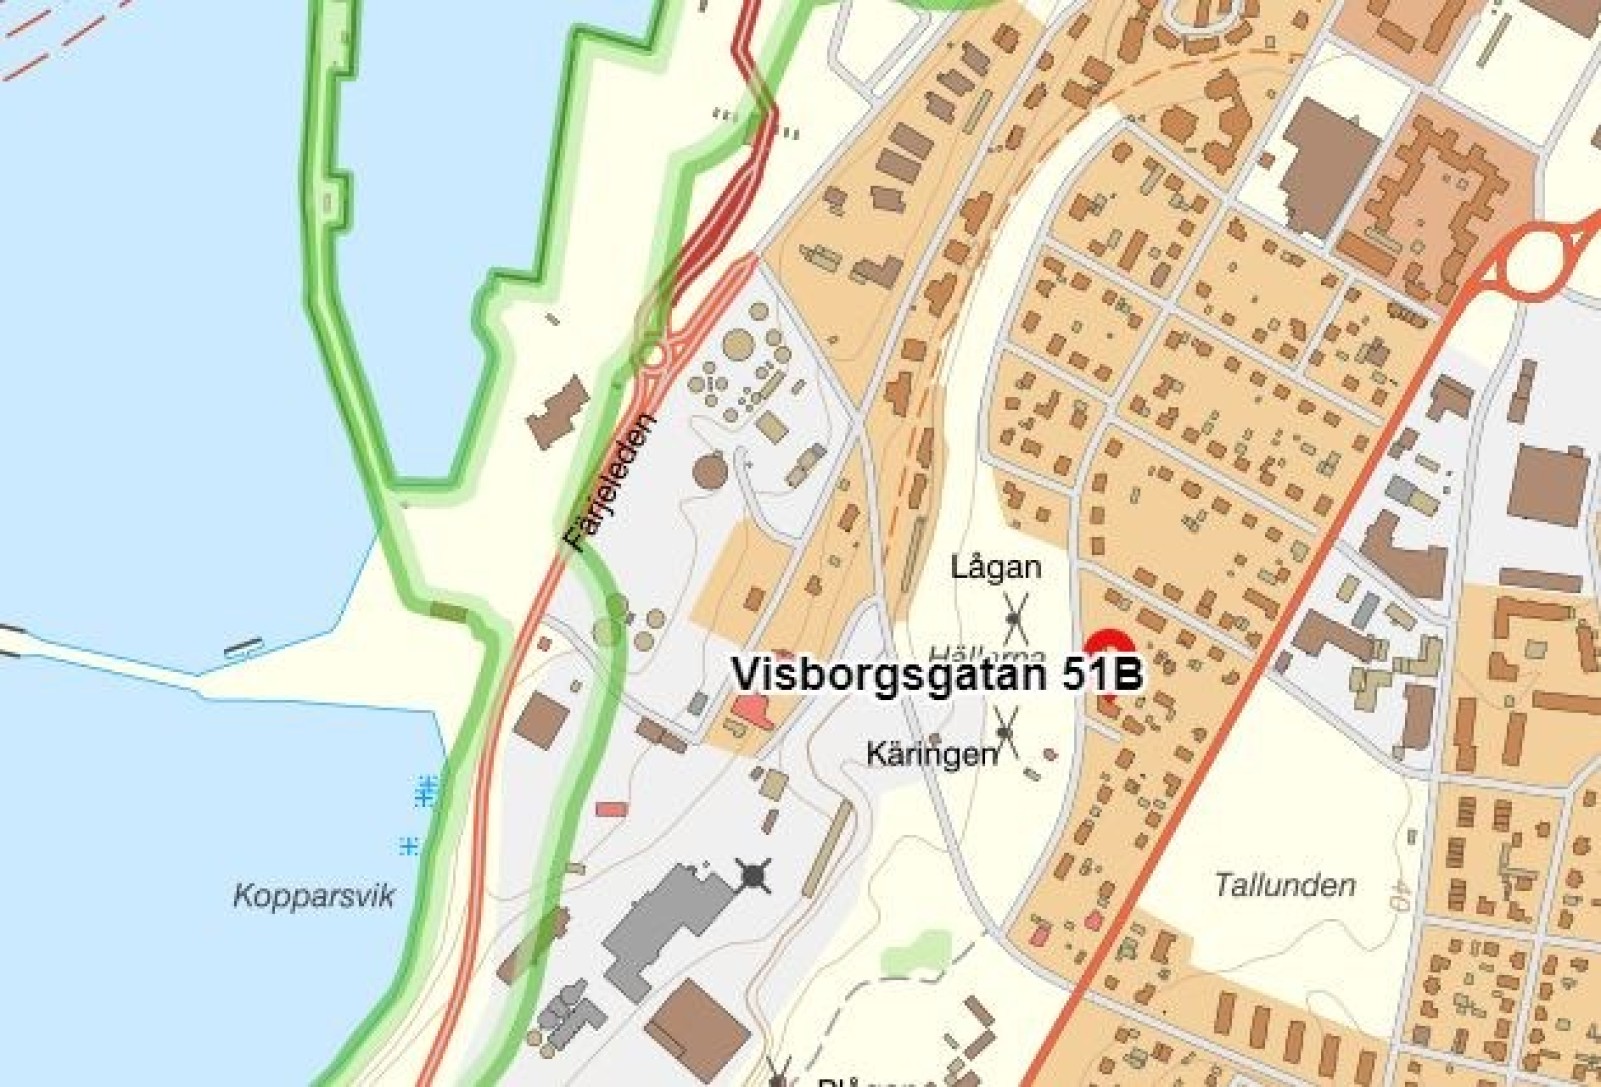  Visborgsgatan 51A